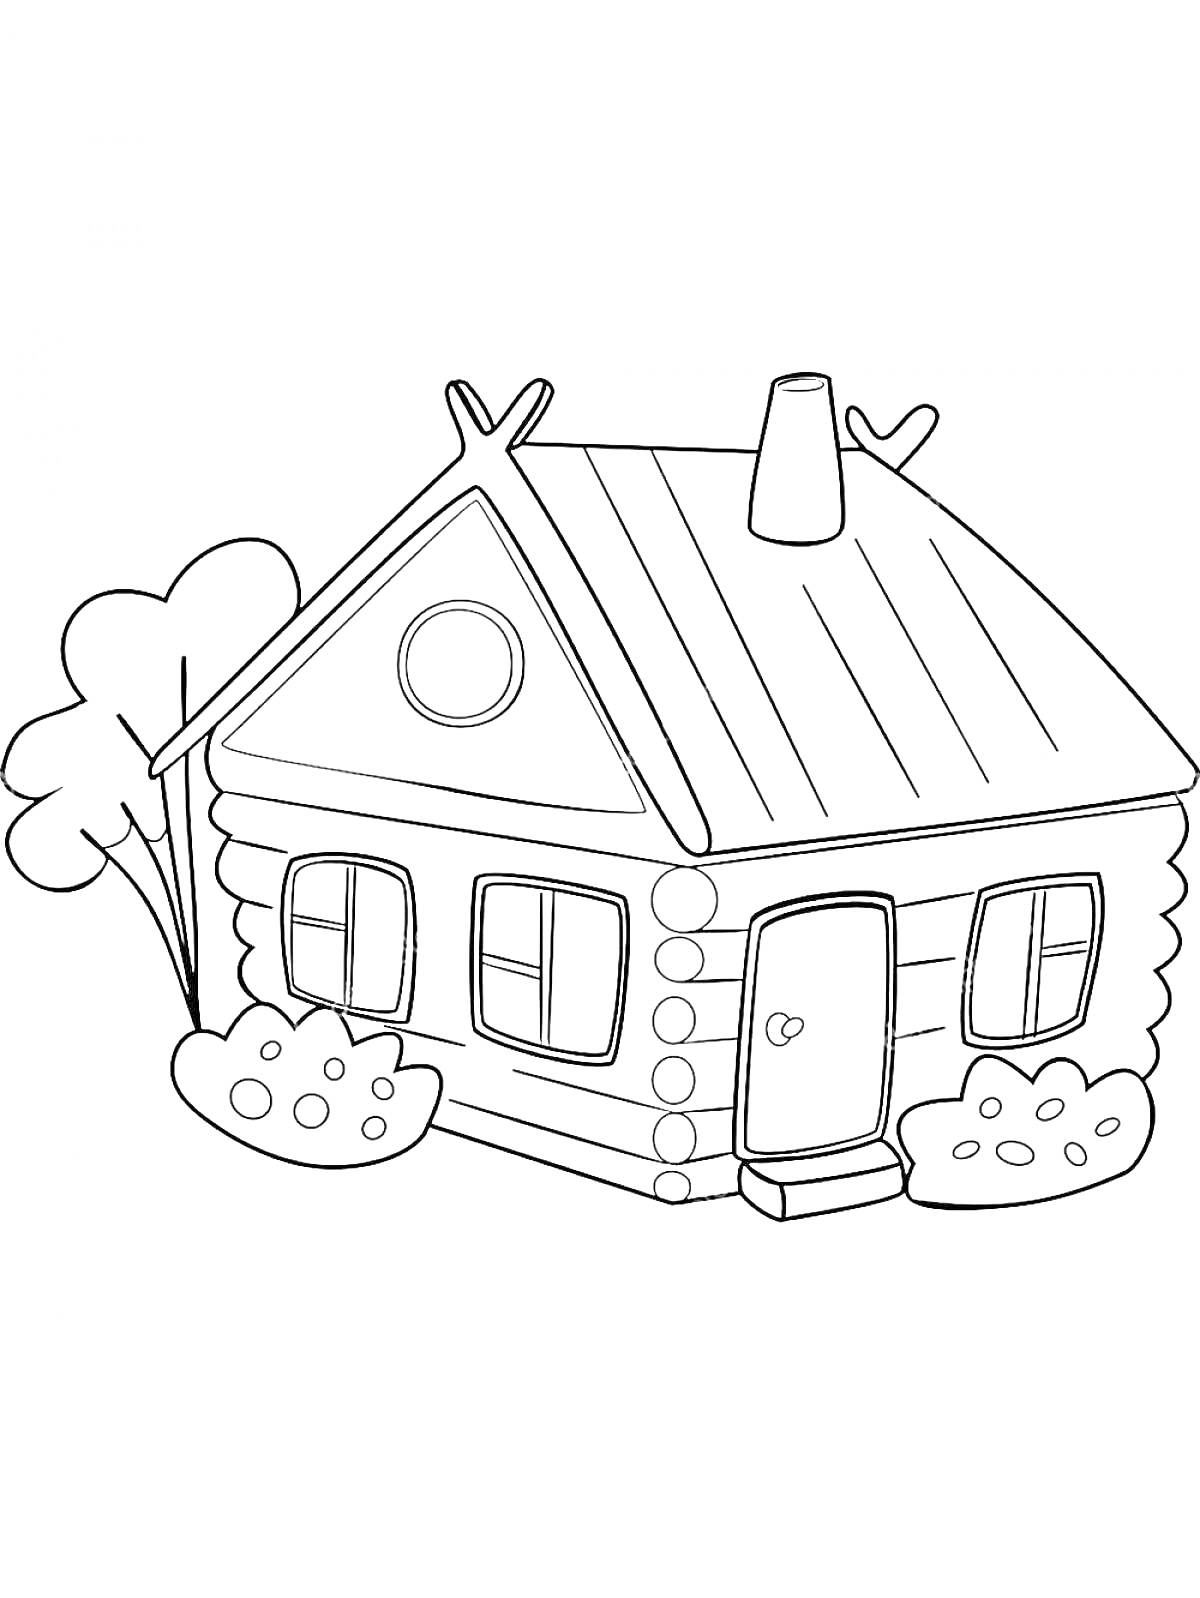 Домик из бревен с трубой на крыше, двумя окнами и кустами перед домом